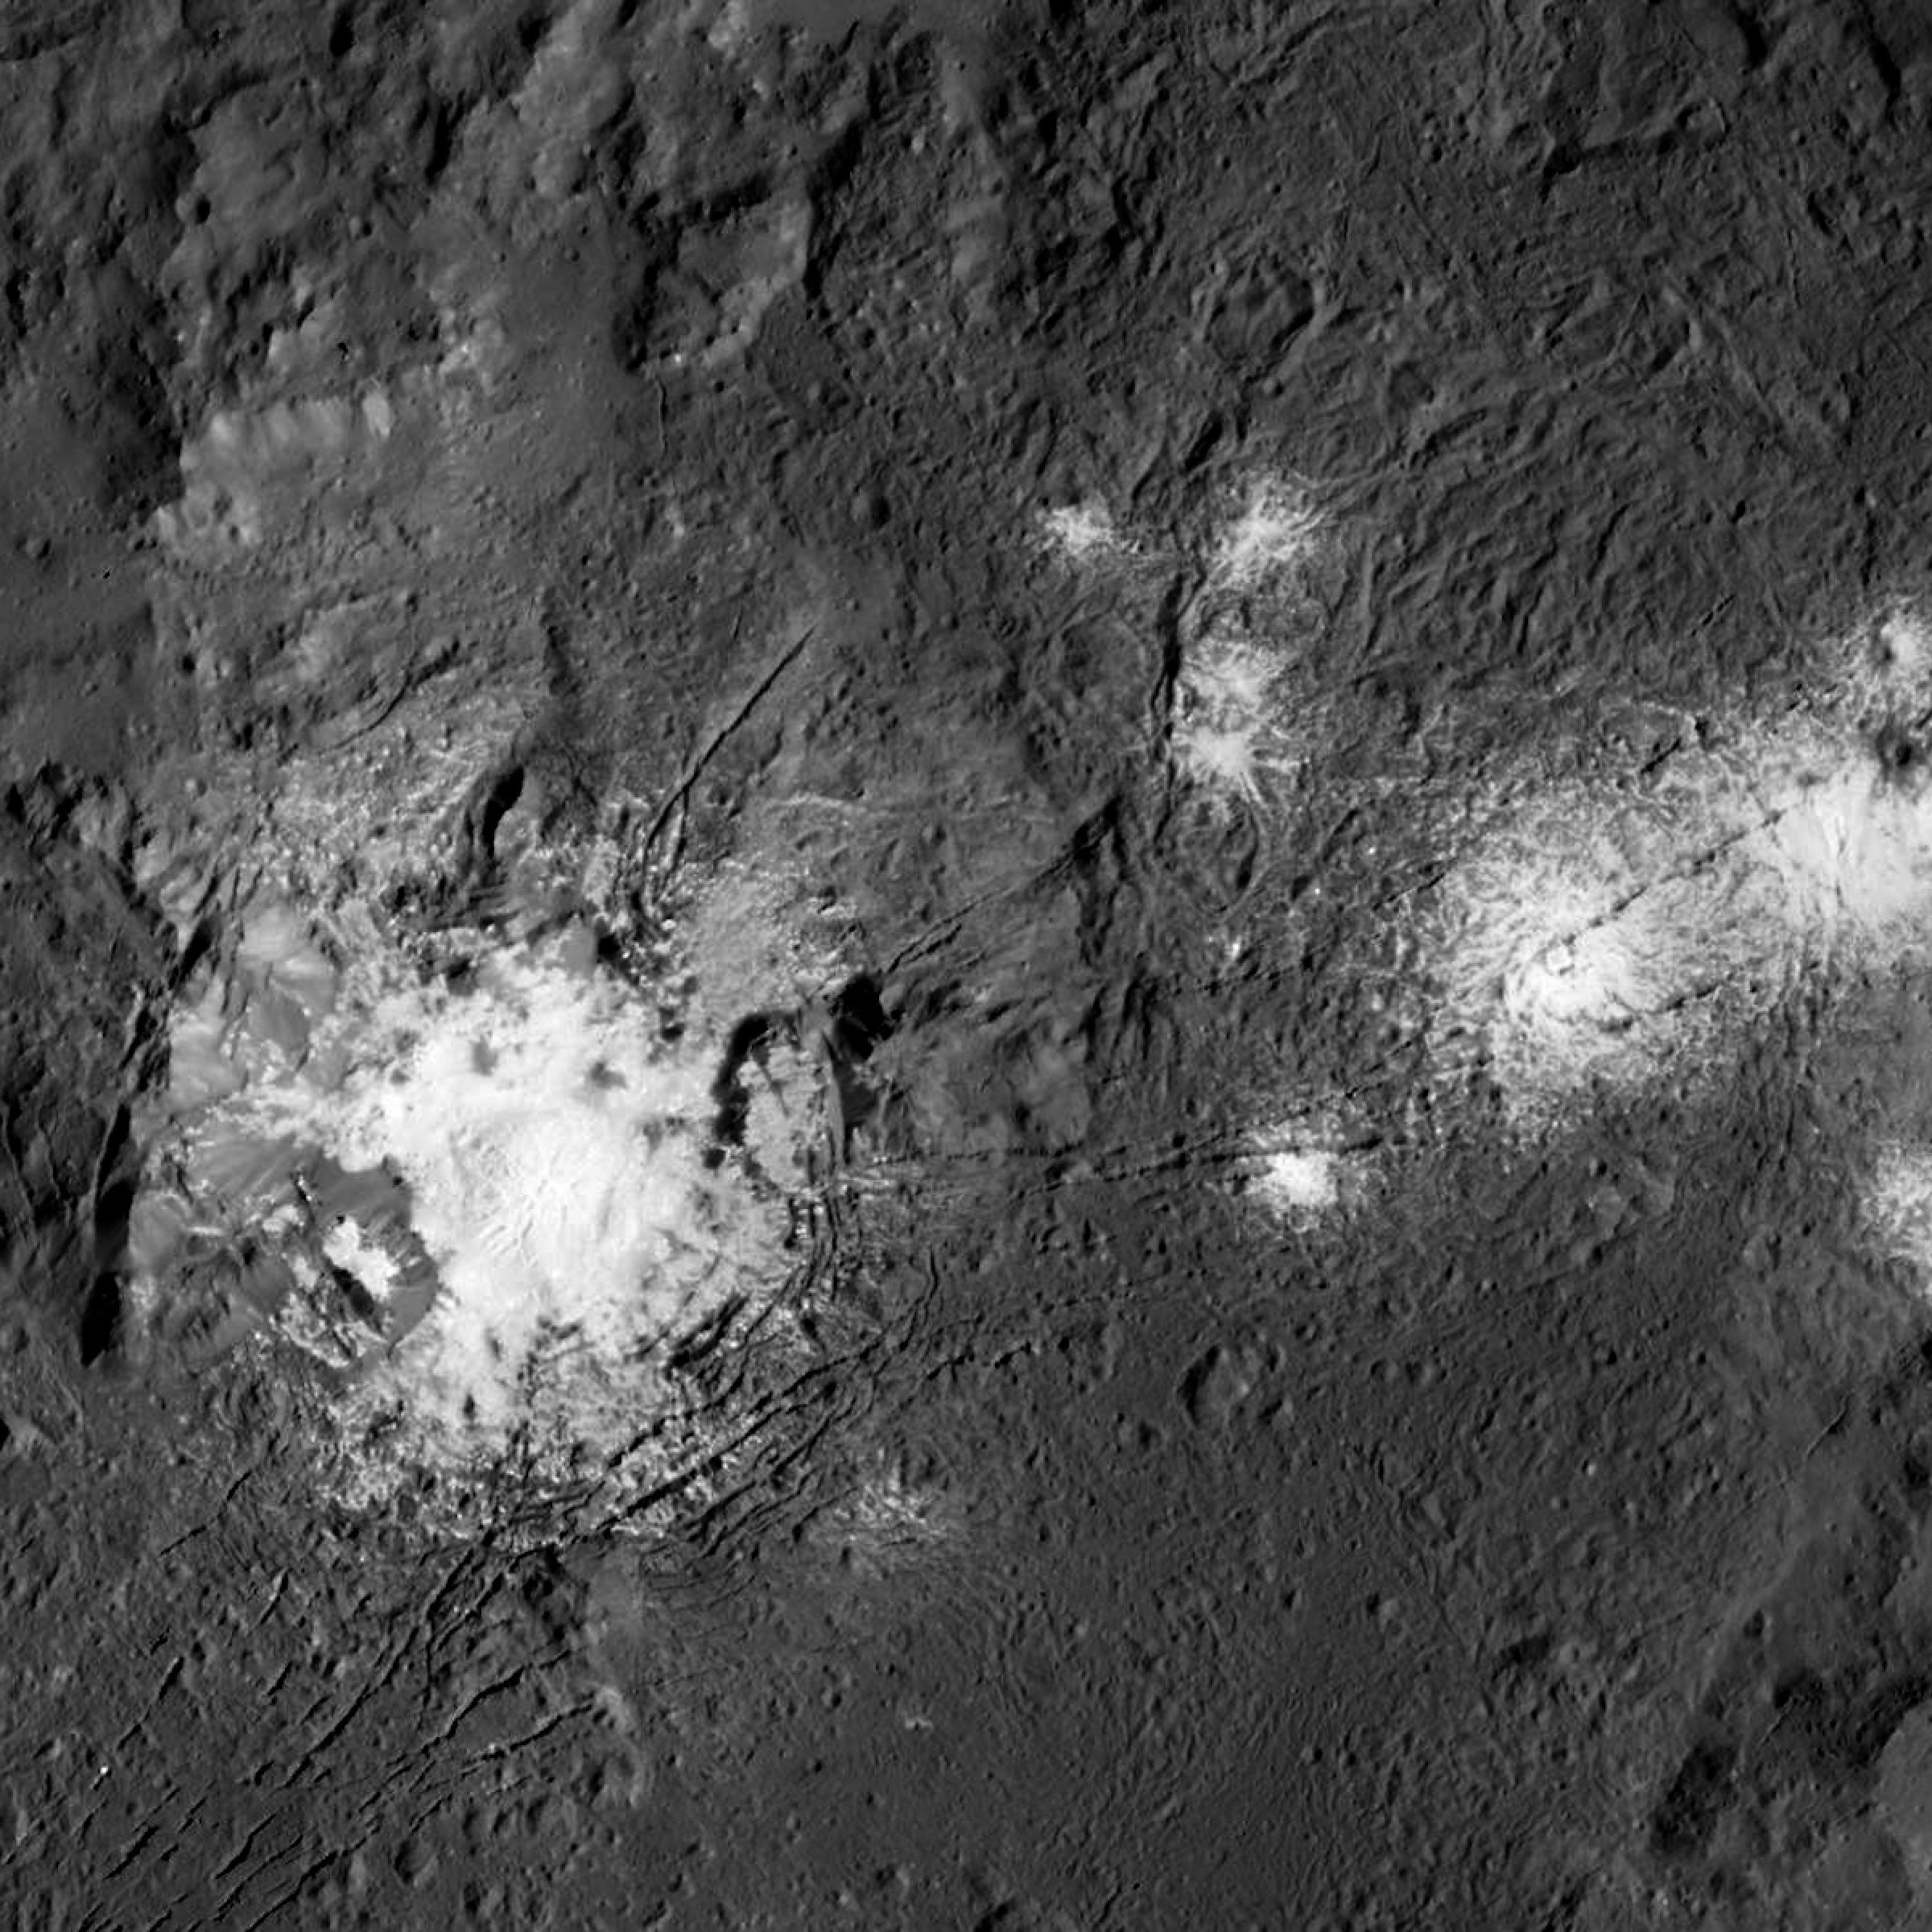 Ein großer Krater in grauer Landschaft, darinnen ist ein heller (überstrahlter) Fleck, rechts davon einige weitere Flecken, wie verplemperte Milch